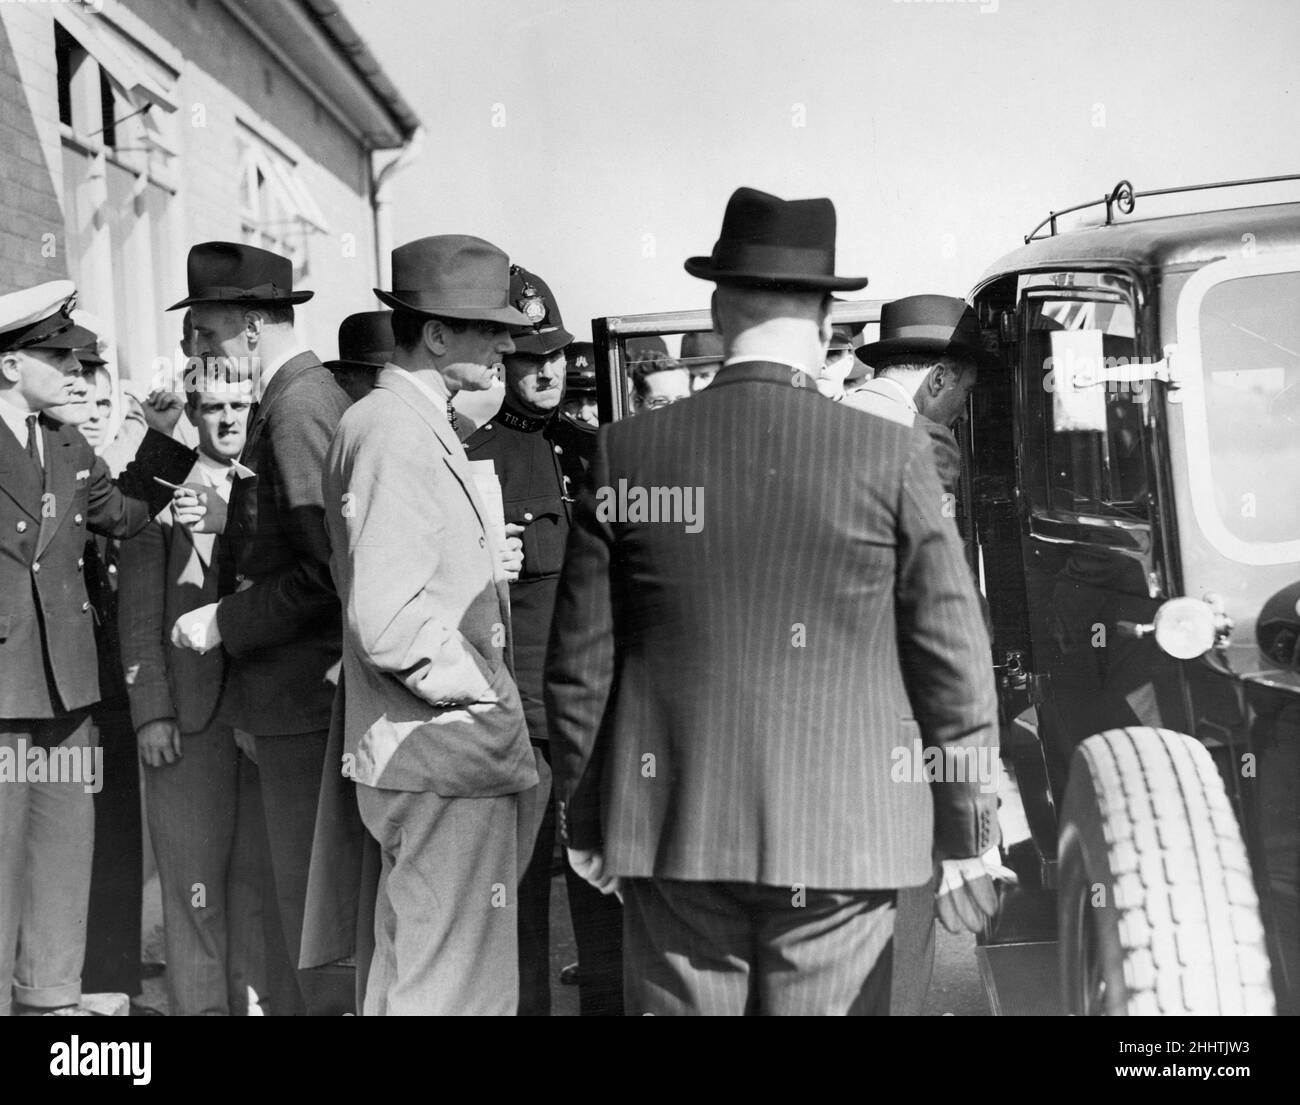 Der ehemalige Offizier aus dem Jahr MI6, Sir Paul Dukes, sah hier, wie er den Flughafen Heston mit dem Taxi verließ, kurz nachdem er aus Berlin zurückgekehrt war. Dukes lehnte es ab, sich zu seinem Geschäft in Nazi-Deutschland zu äußern. 30th. August 1939 Stockfoto